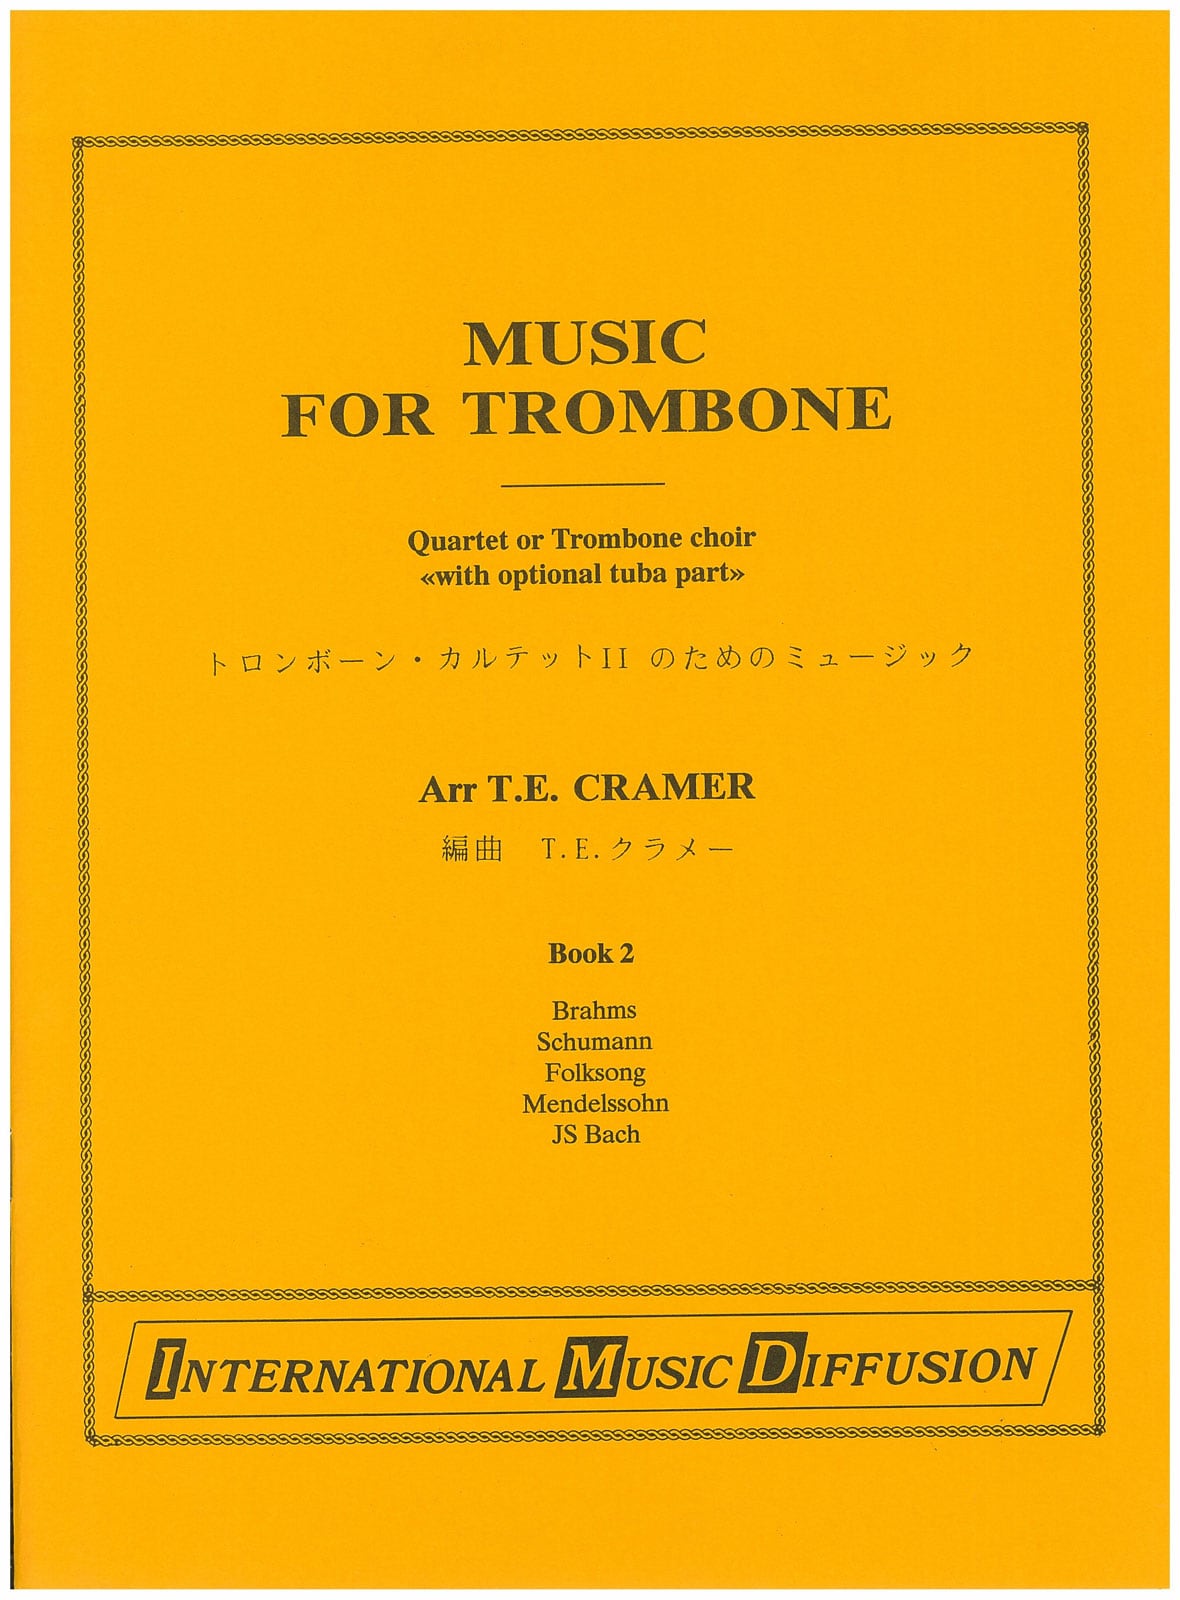 IMD ARPEGES MUSIC FOR TROMBONE QUARTET VOL 2 - QUARTET TROMB. + TUBA